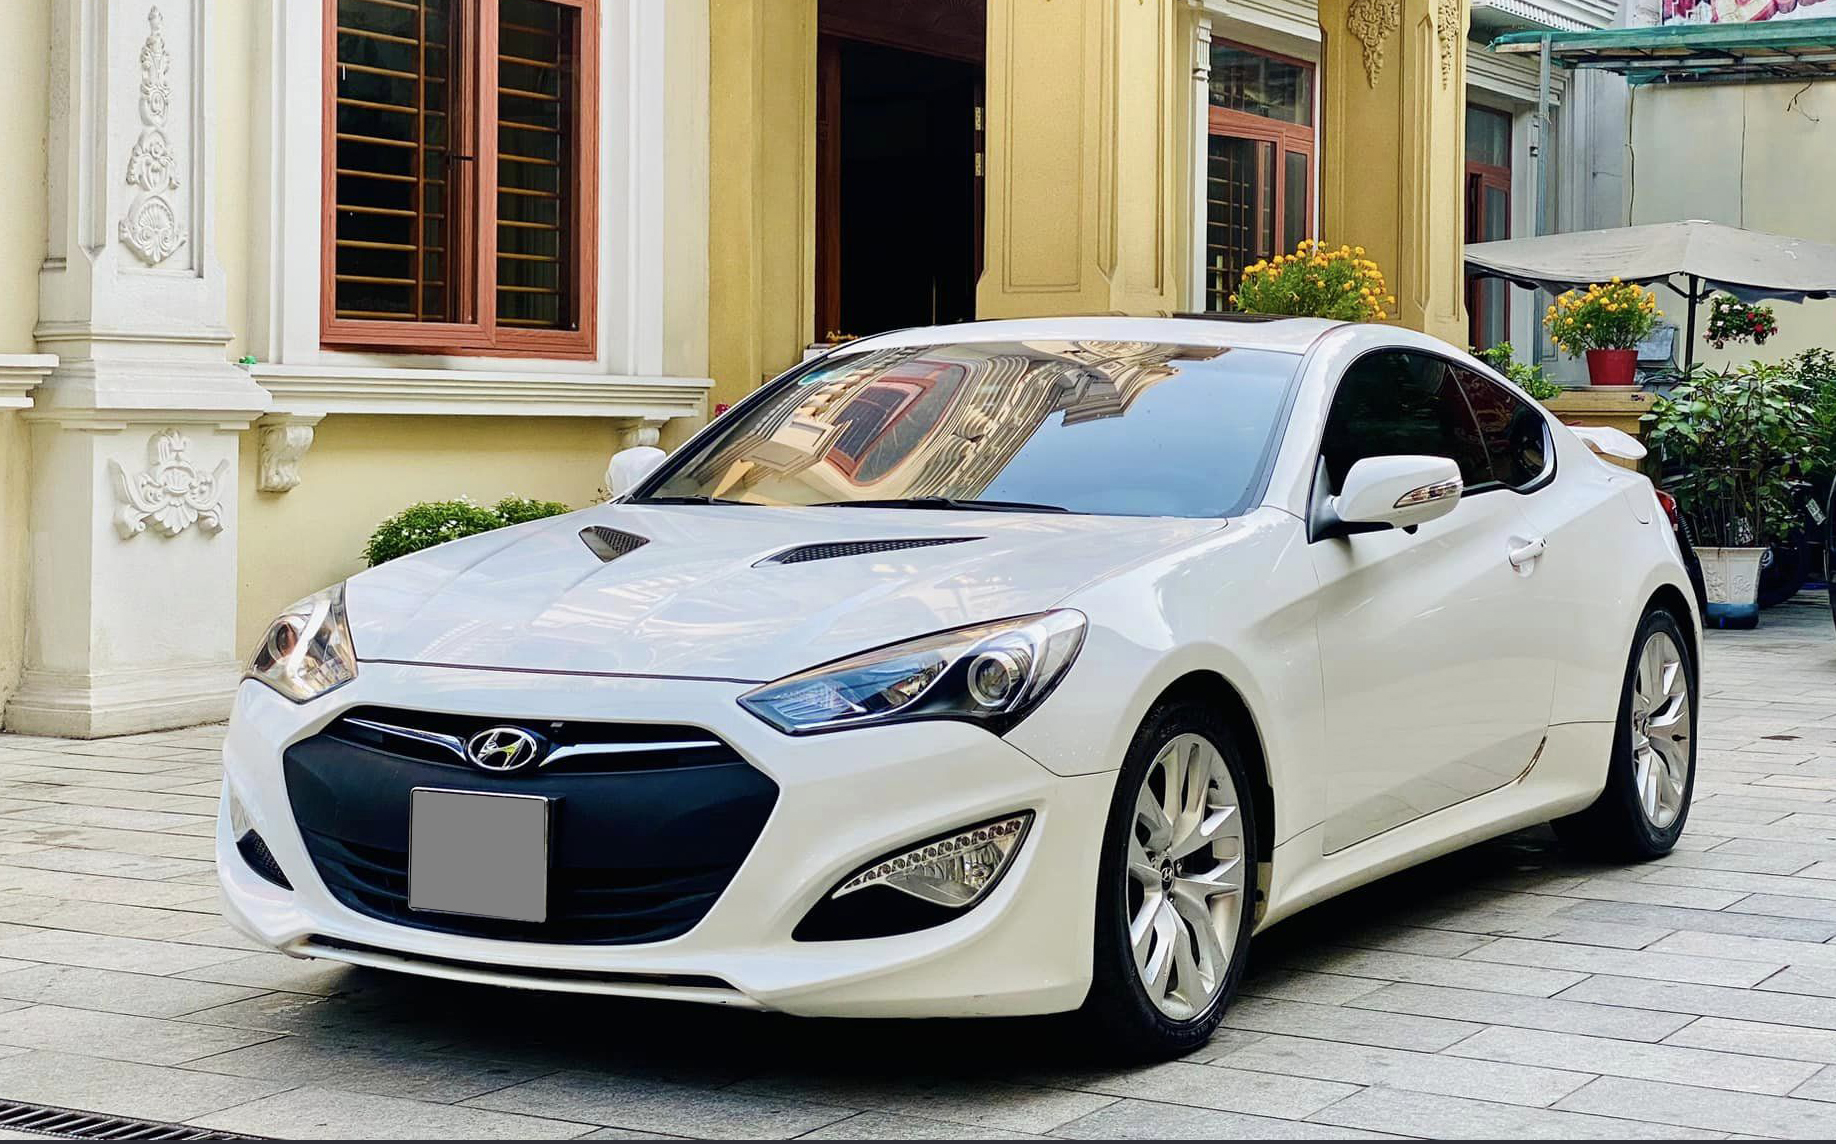 Chiếc Hyundai Genesis Coupe này giữ giá hơn Camry cùng đời: Sau 12 năm vẫn còn gần 540 triệu, mỗi năm chỉ đi hơn 2.000km- Ảnh 3.